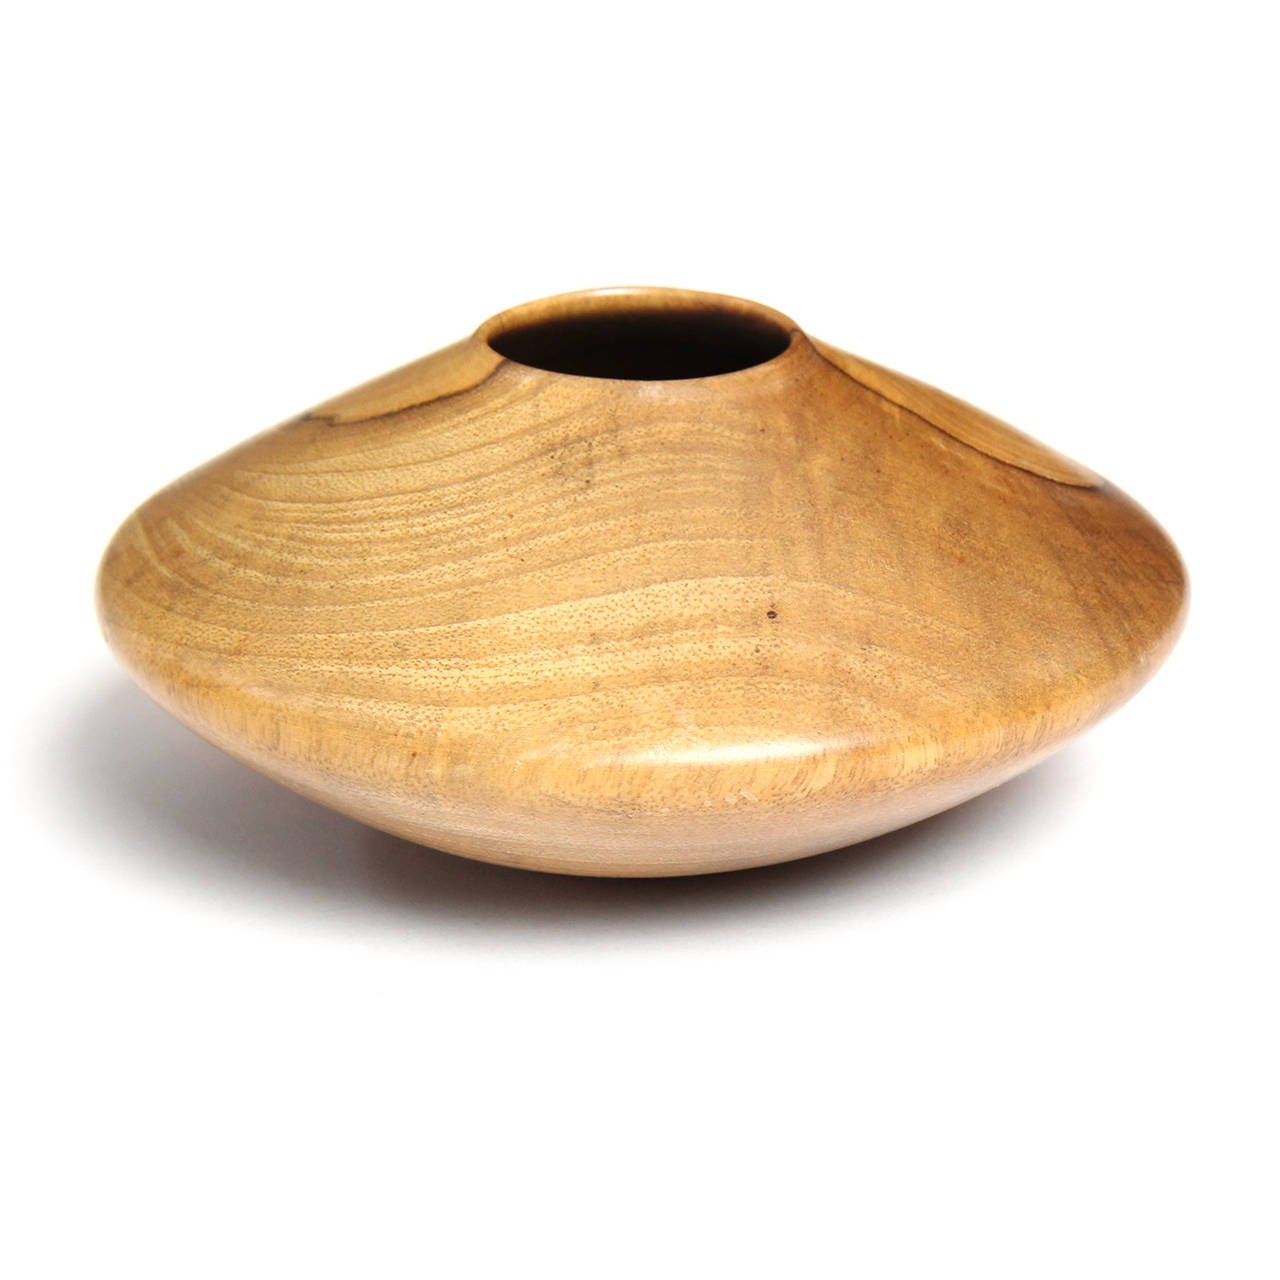 wood vessels